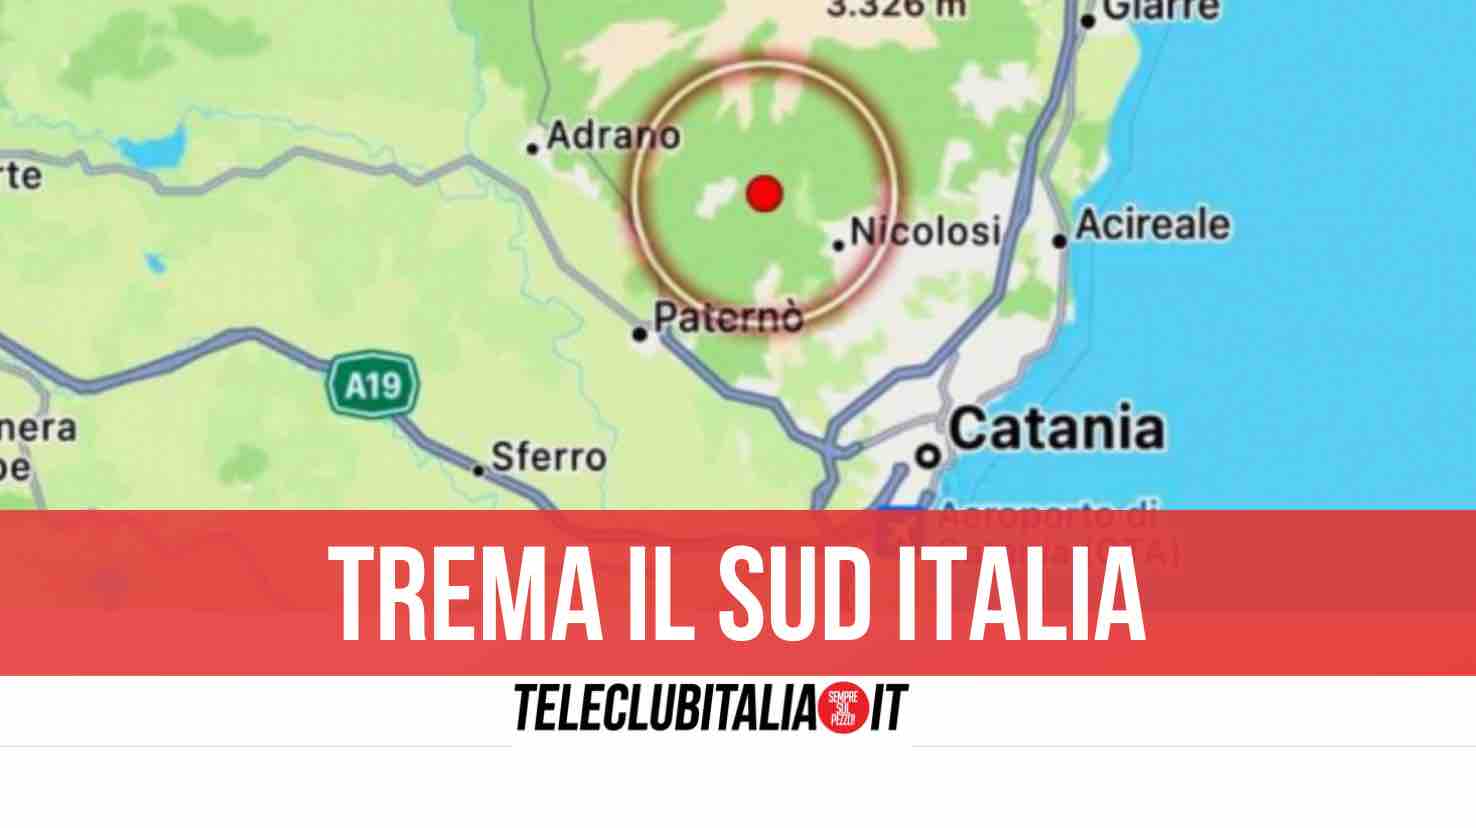 terremoto catania 18 marzo